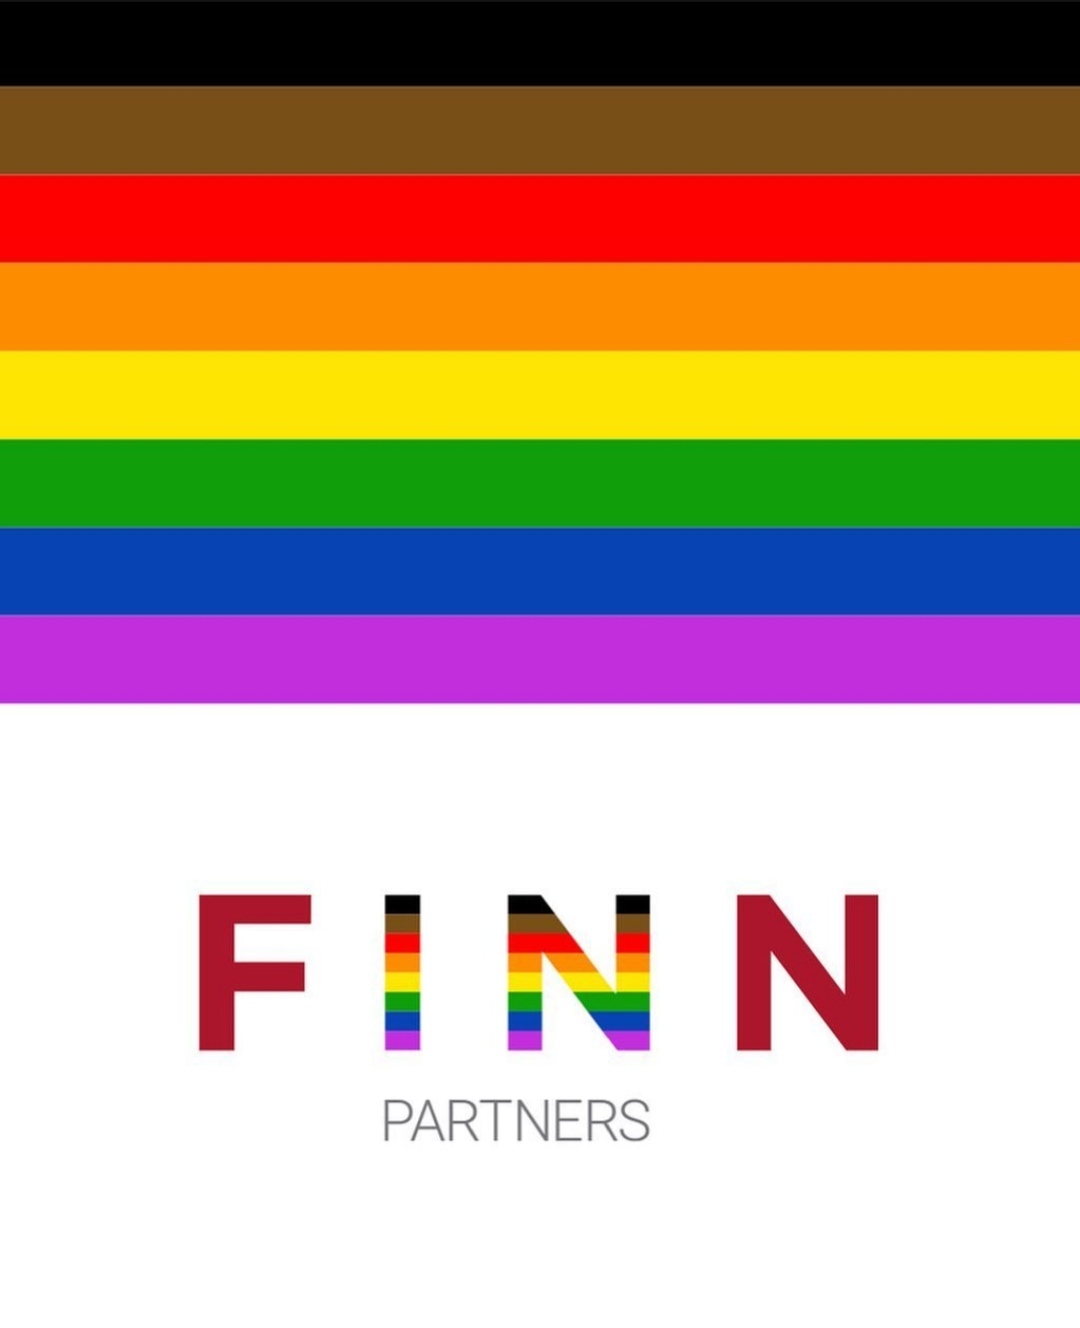 Finn Partners-Logo mit einer Regenbogenfahne.